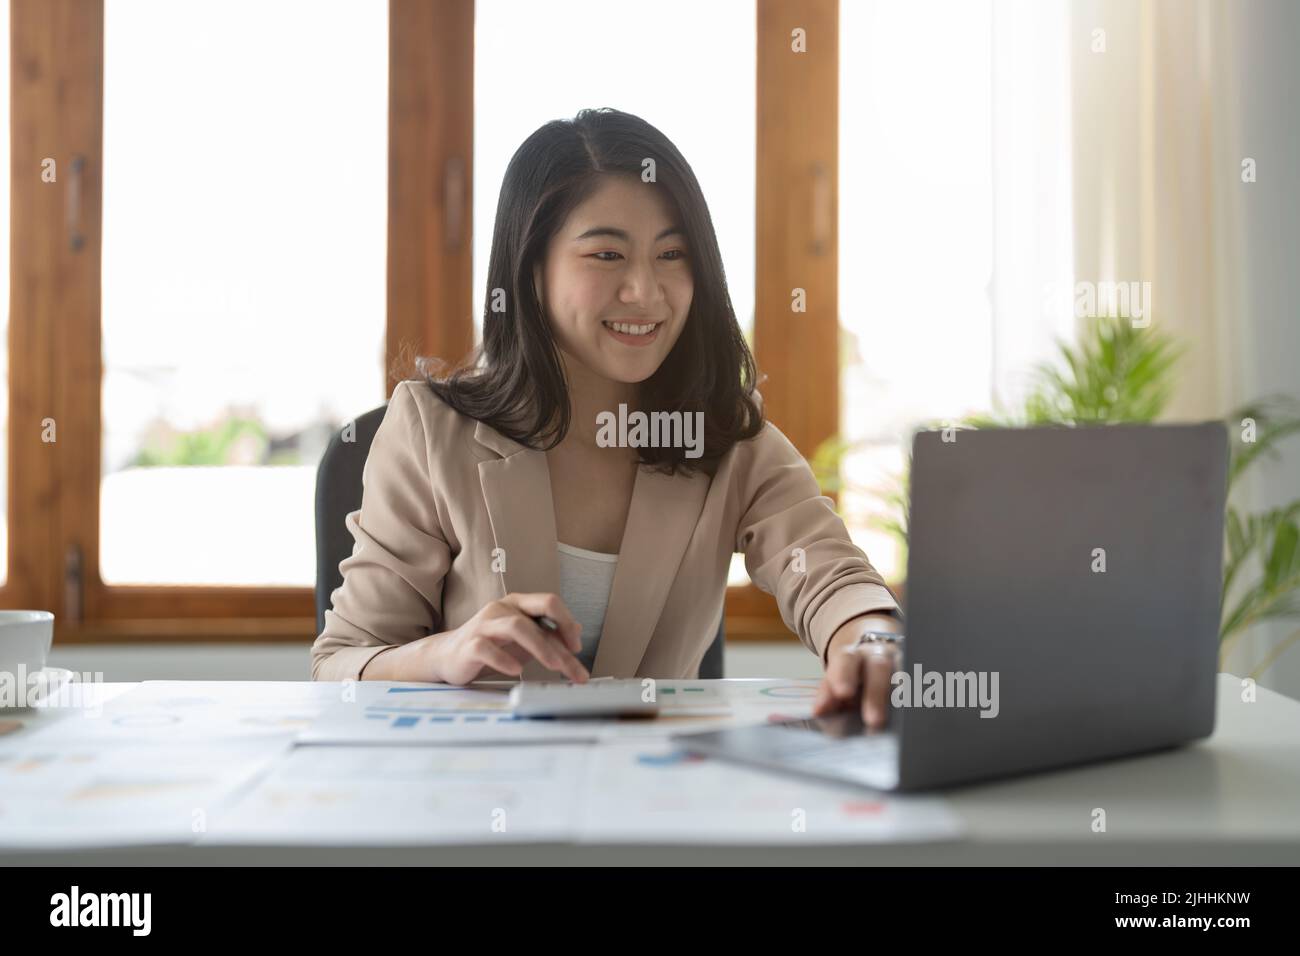 Portrait von attraktiven asiatischen erfahrenen professionellen Mädchen Agent Broker Executive Assistant Berechnung Einkommen Gewinn bei modernen Loft Industrial Stockfoto